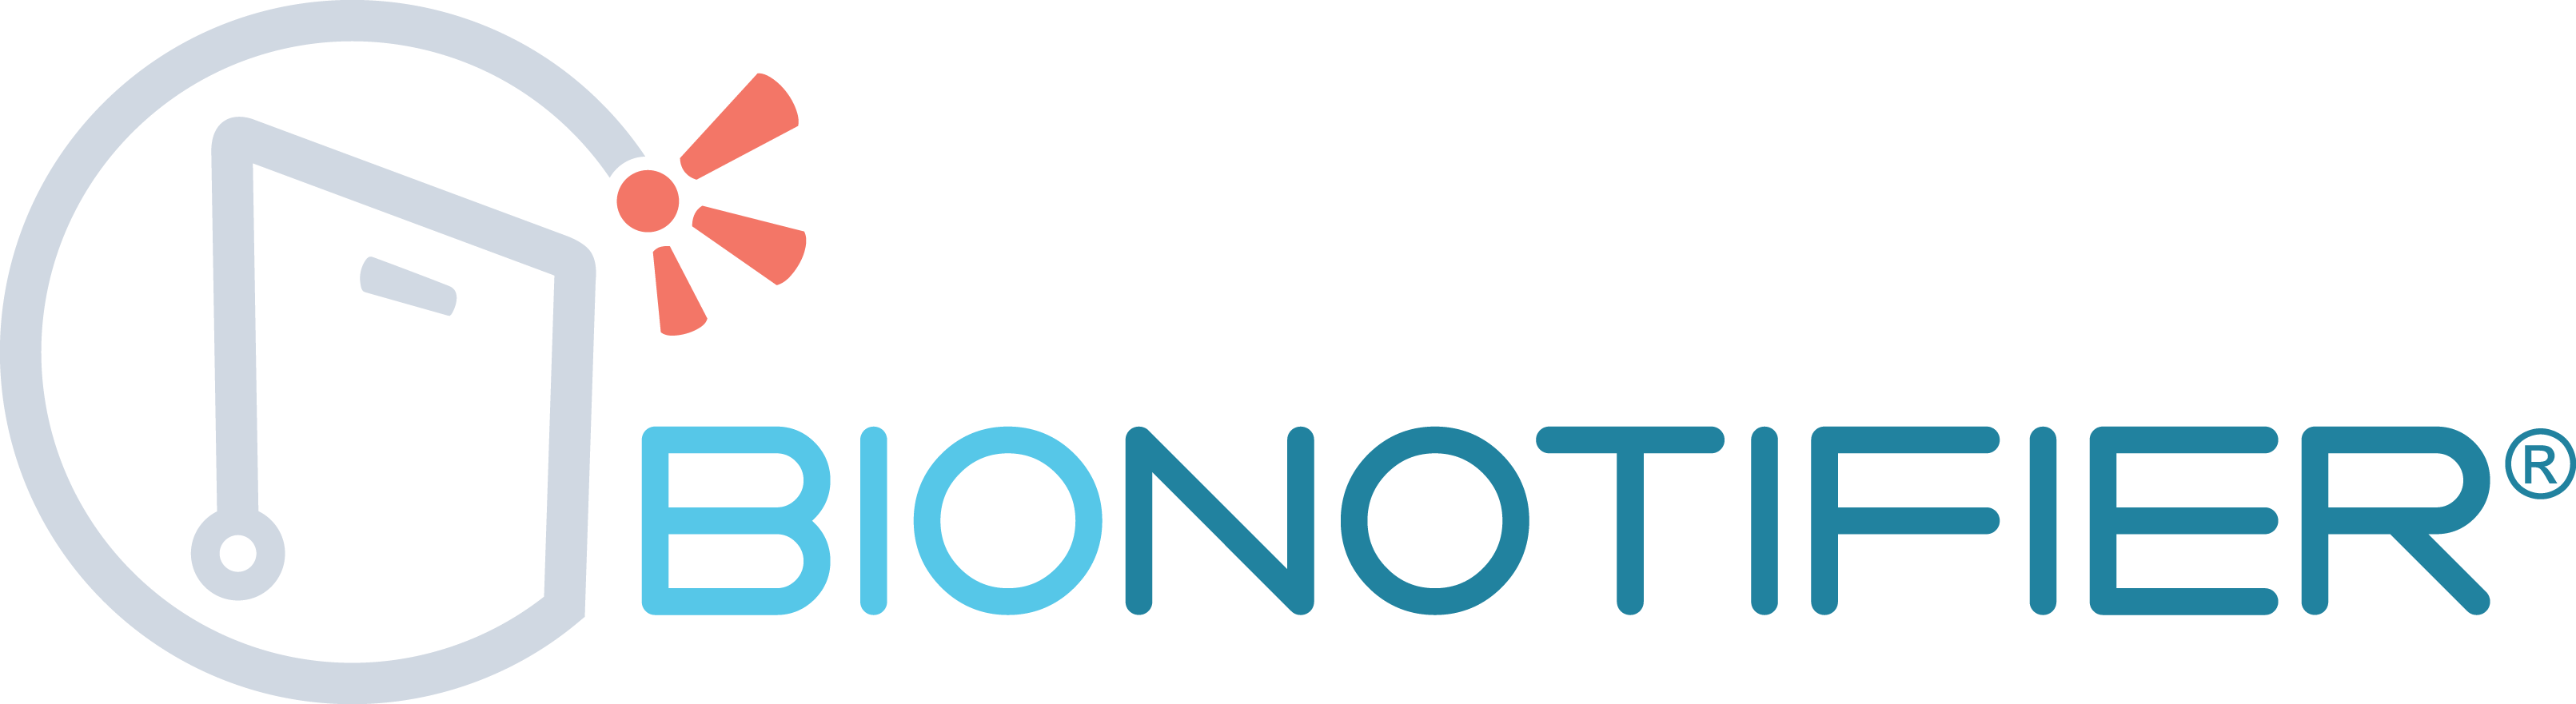 BIONotifier-horizontal